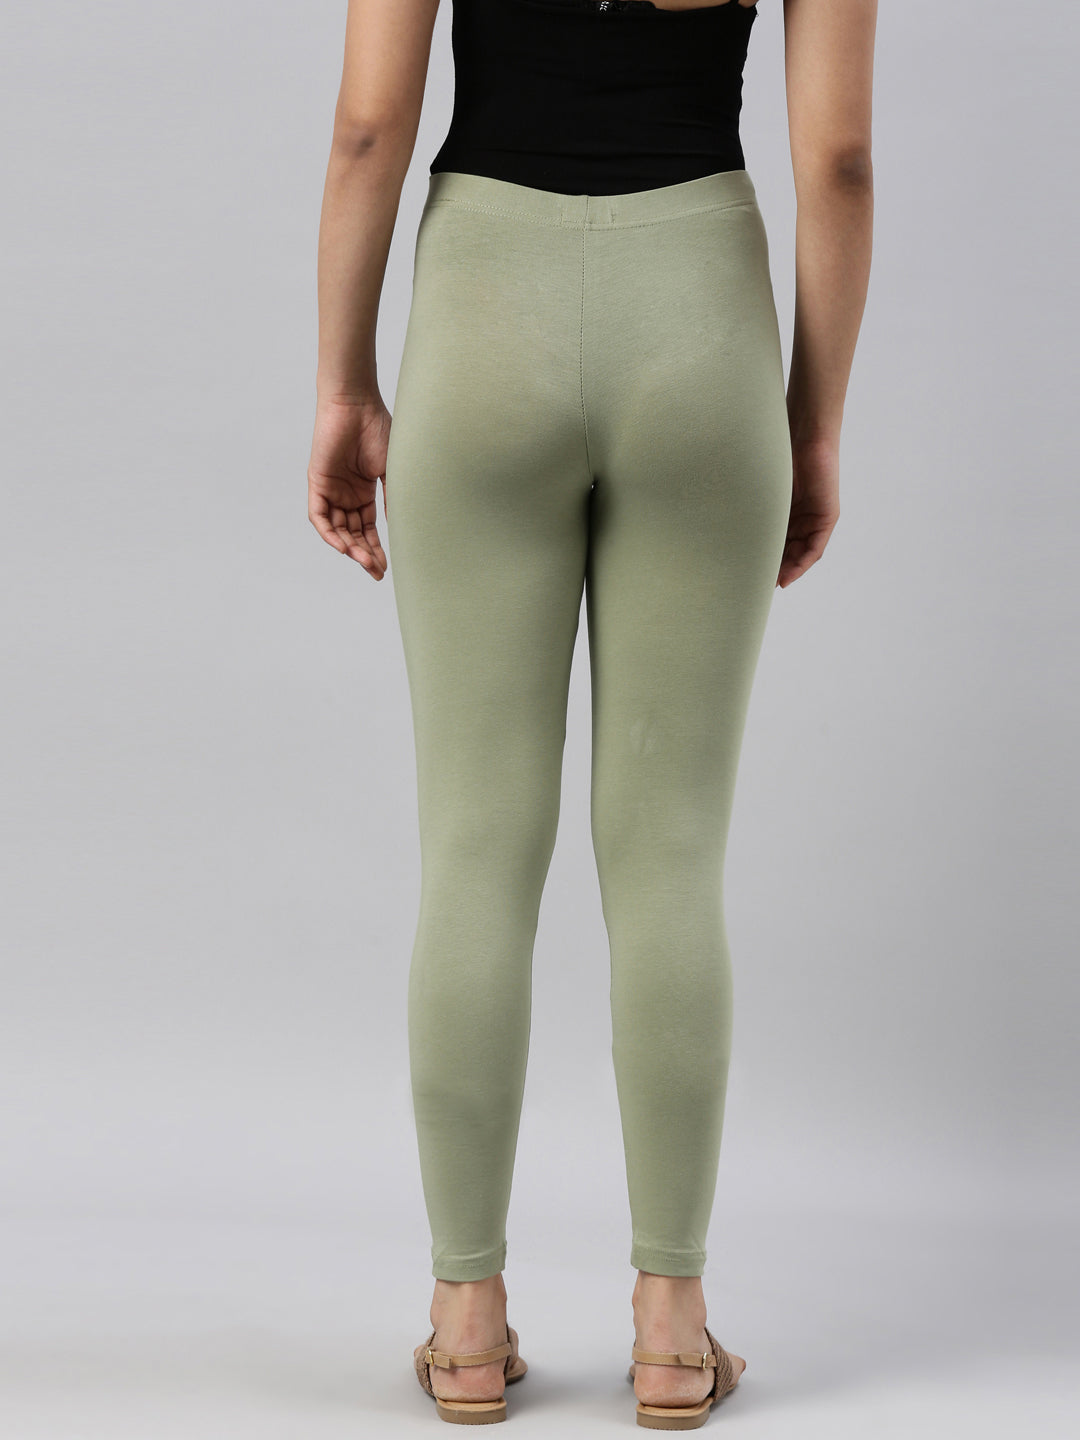 Buy Suti Women Cotton Ankle Length Leggings Light Green online